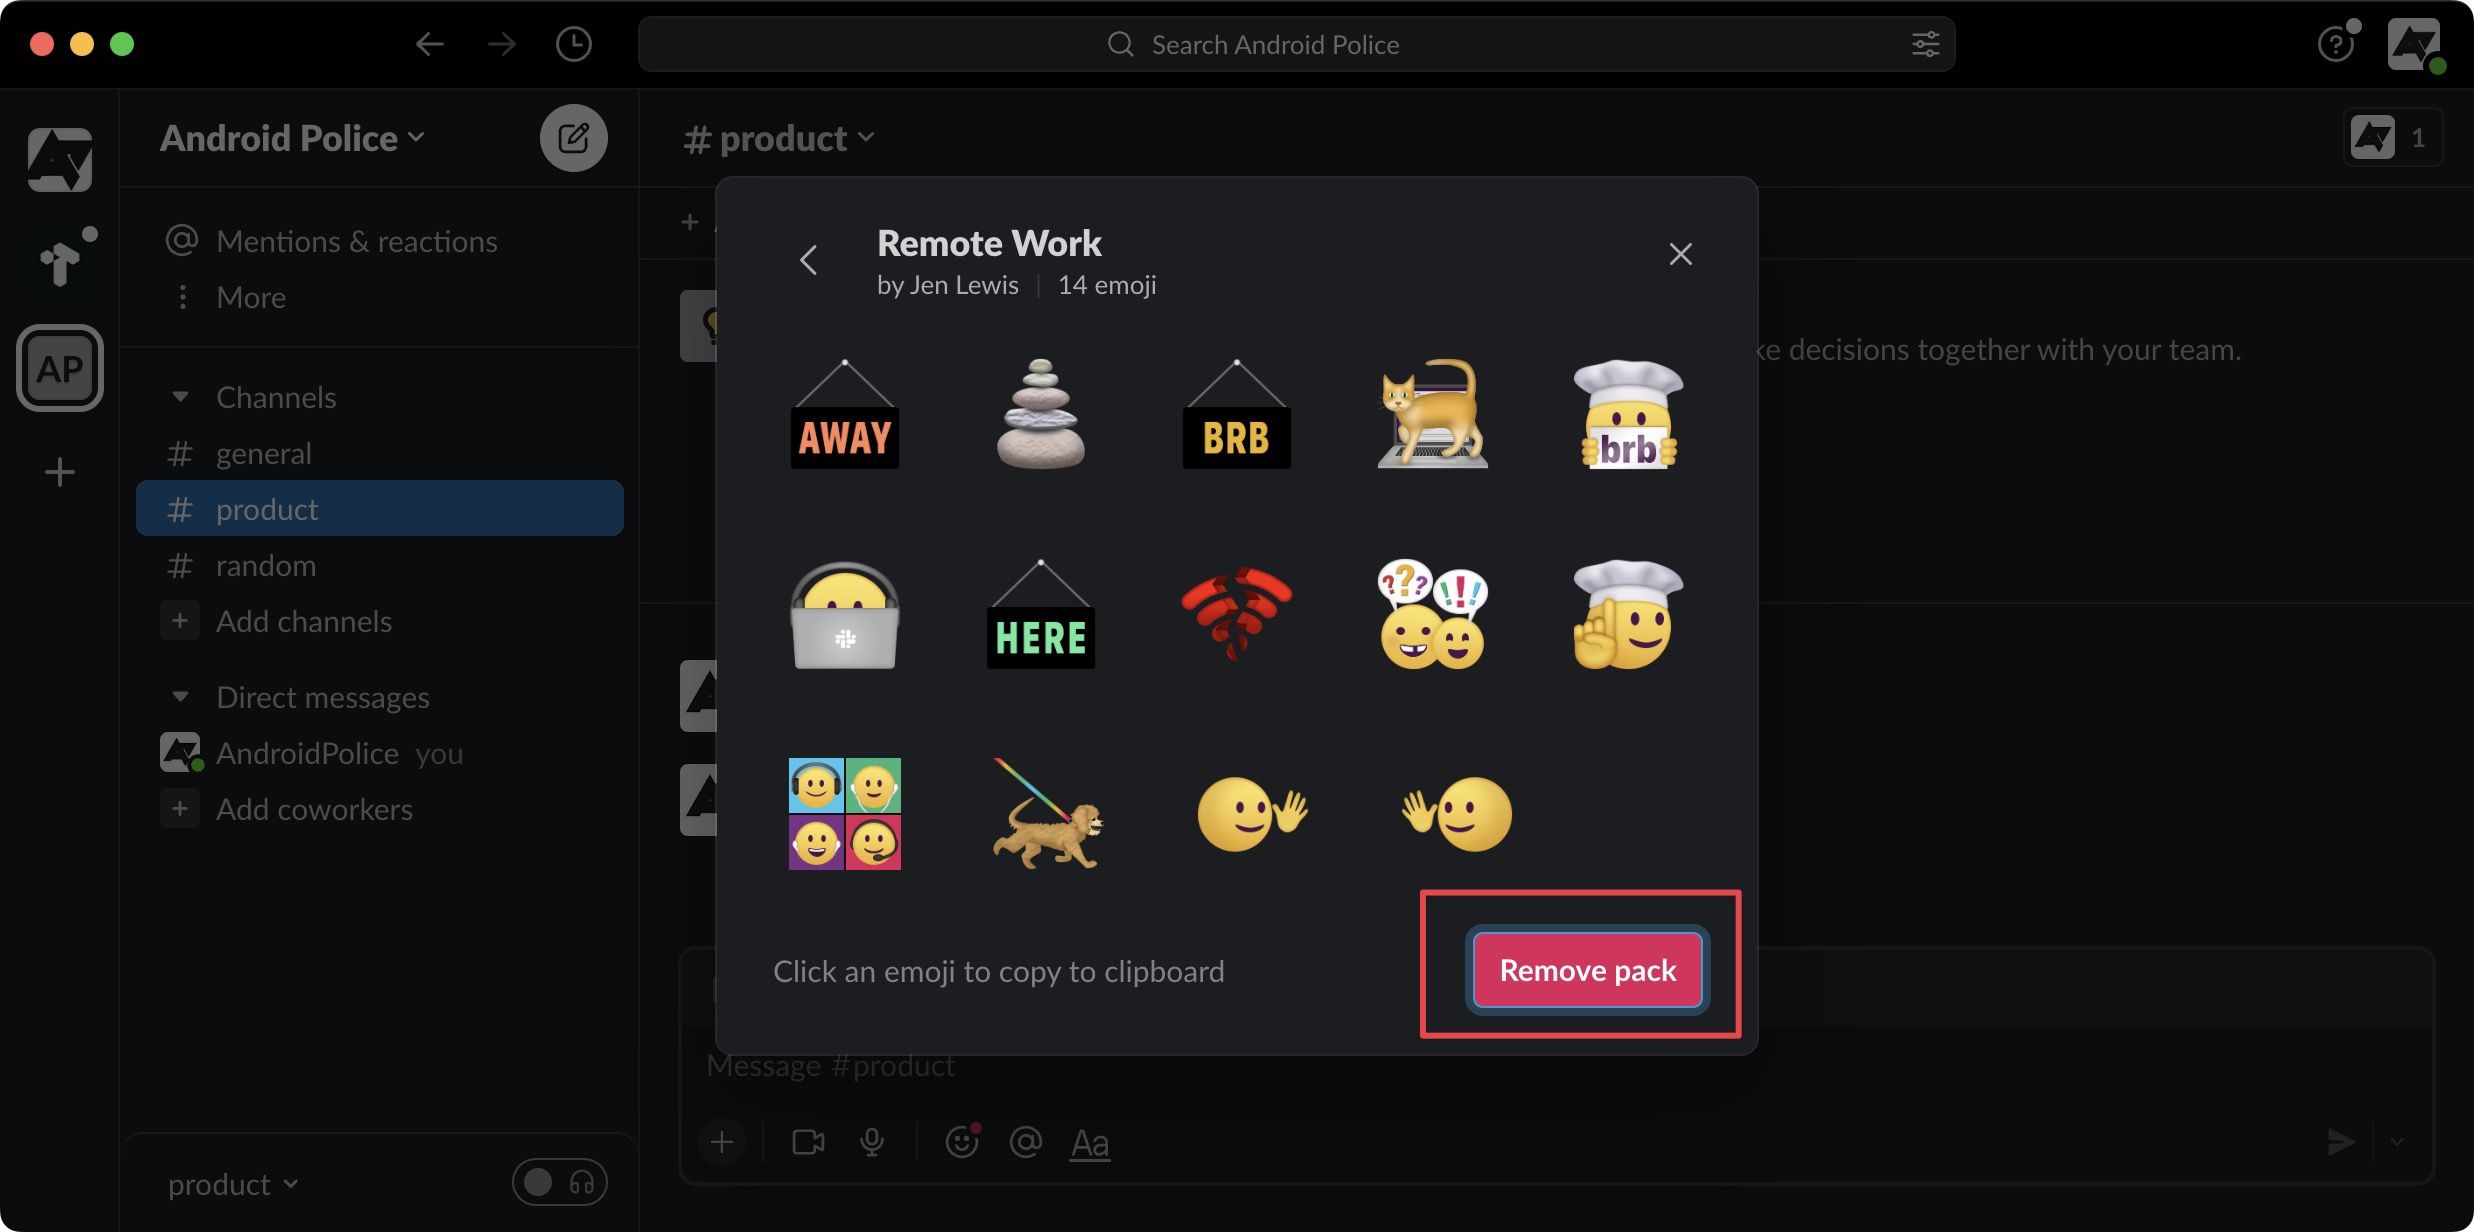   janela pop-up exibindo emojis personalizados, com a opção ‘Remover pacote’ destacada em vermelho.